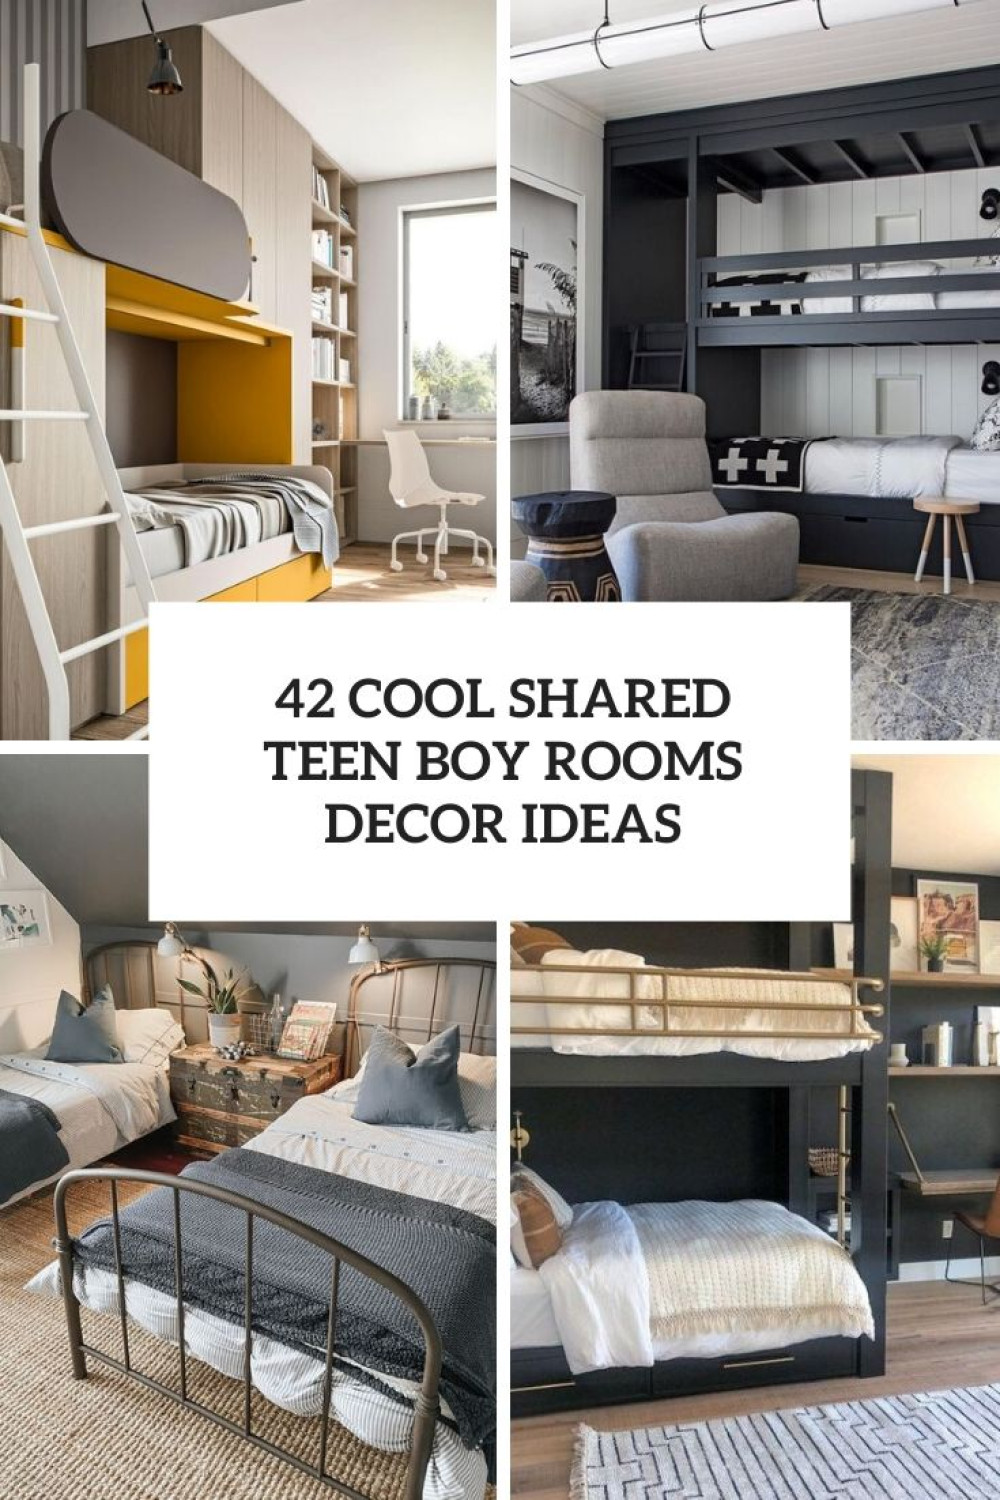 Cool Shared Teen Boy Rooms Décor Ideas - DigsDigs